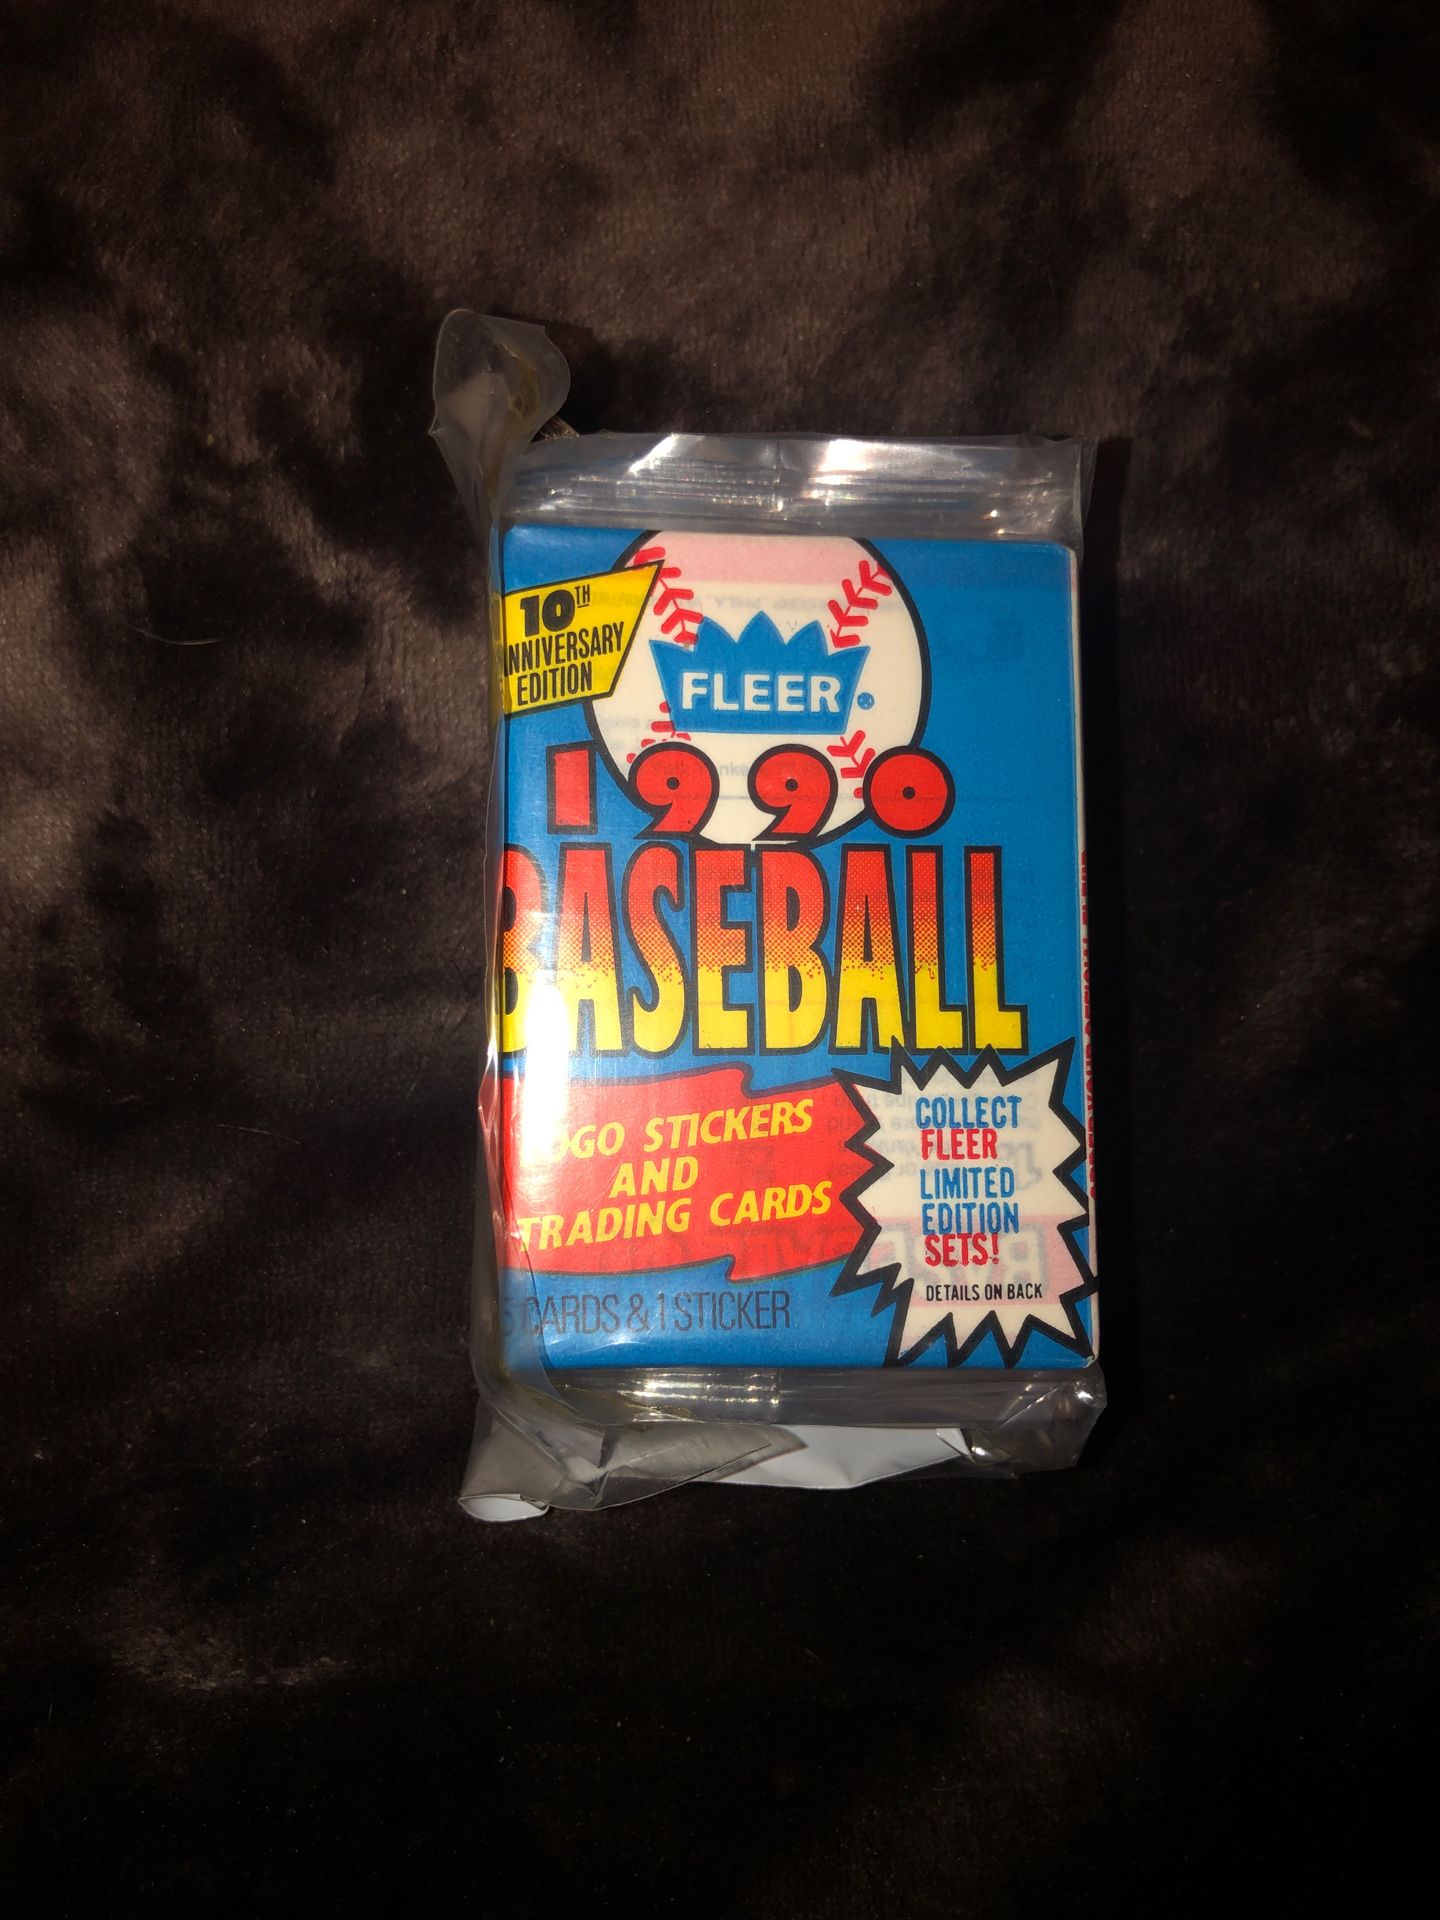 Vintage baseball card packs never opened